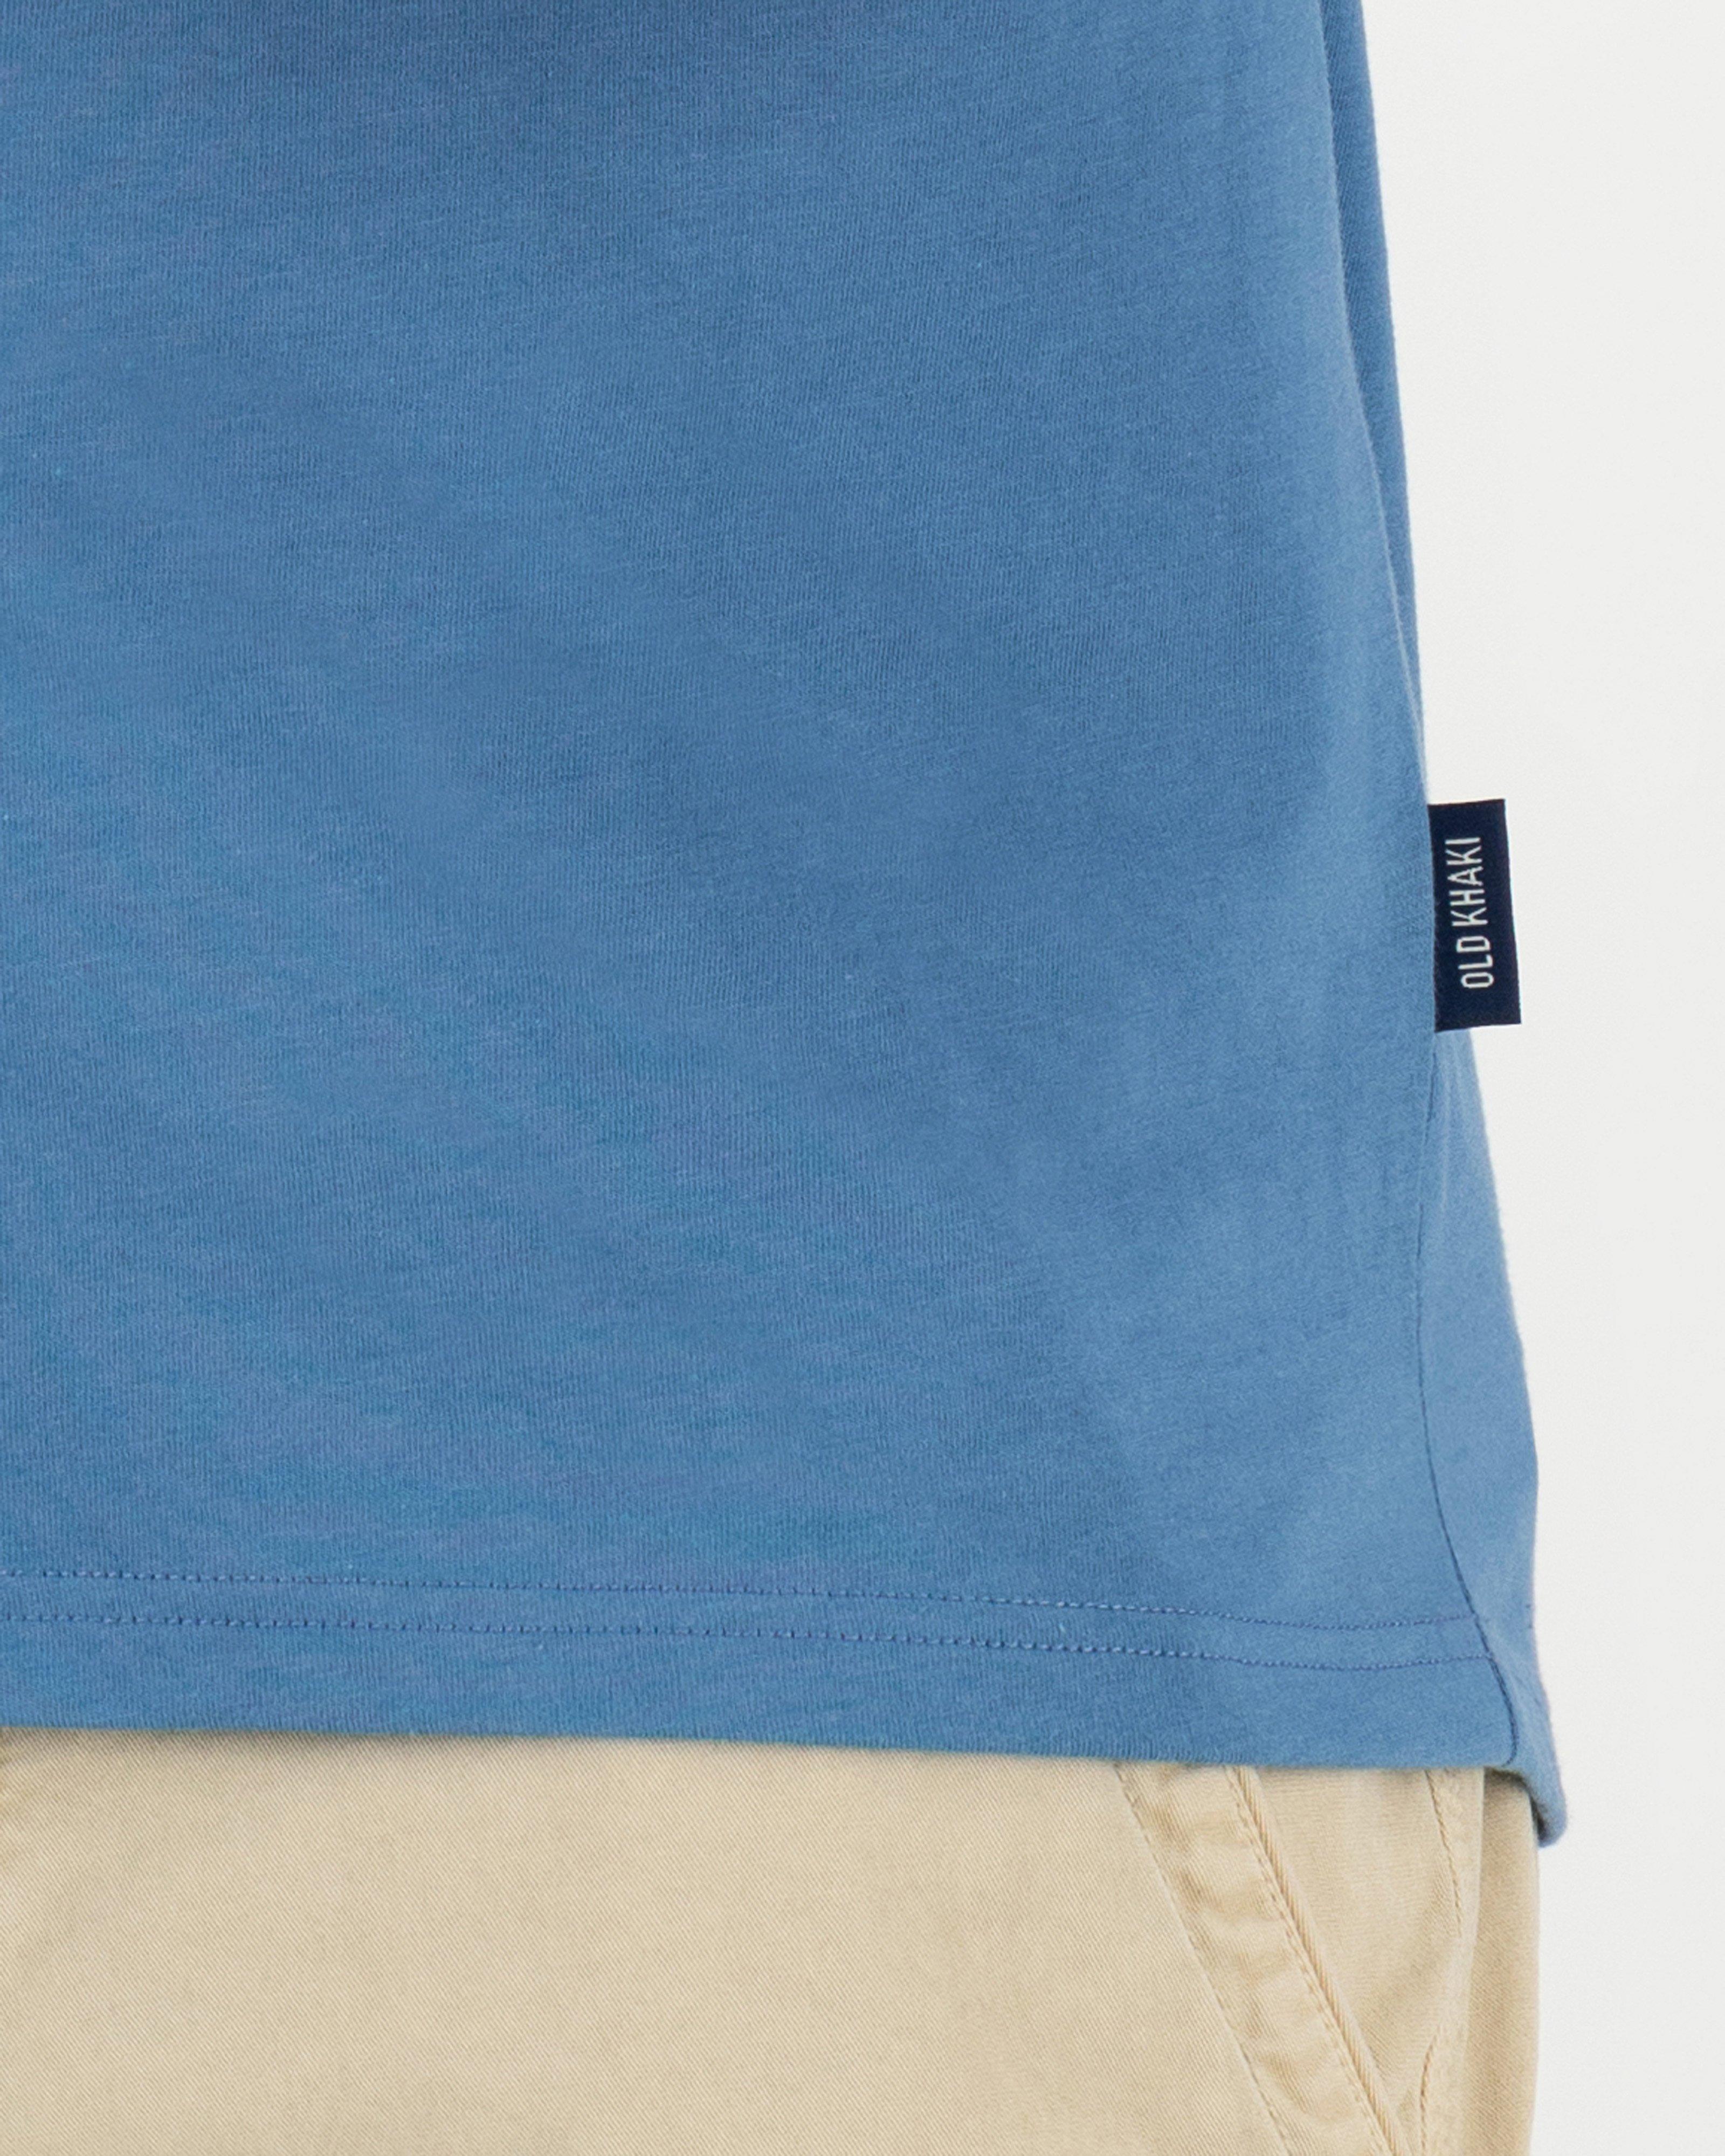 Men's Fox Standard Fit T-Shirt | Old Khaki